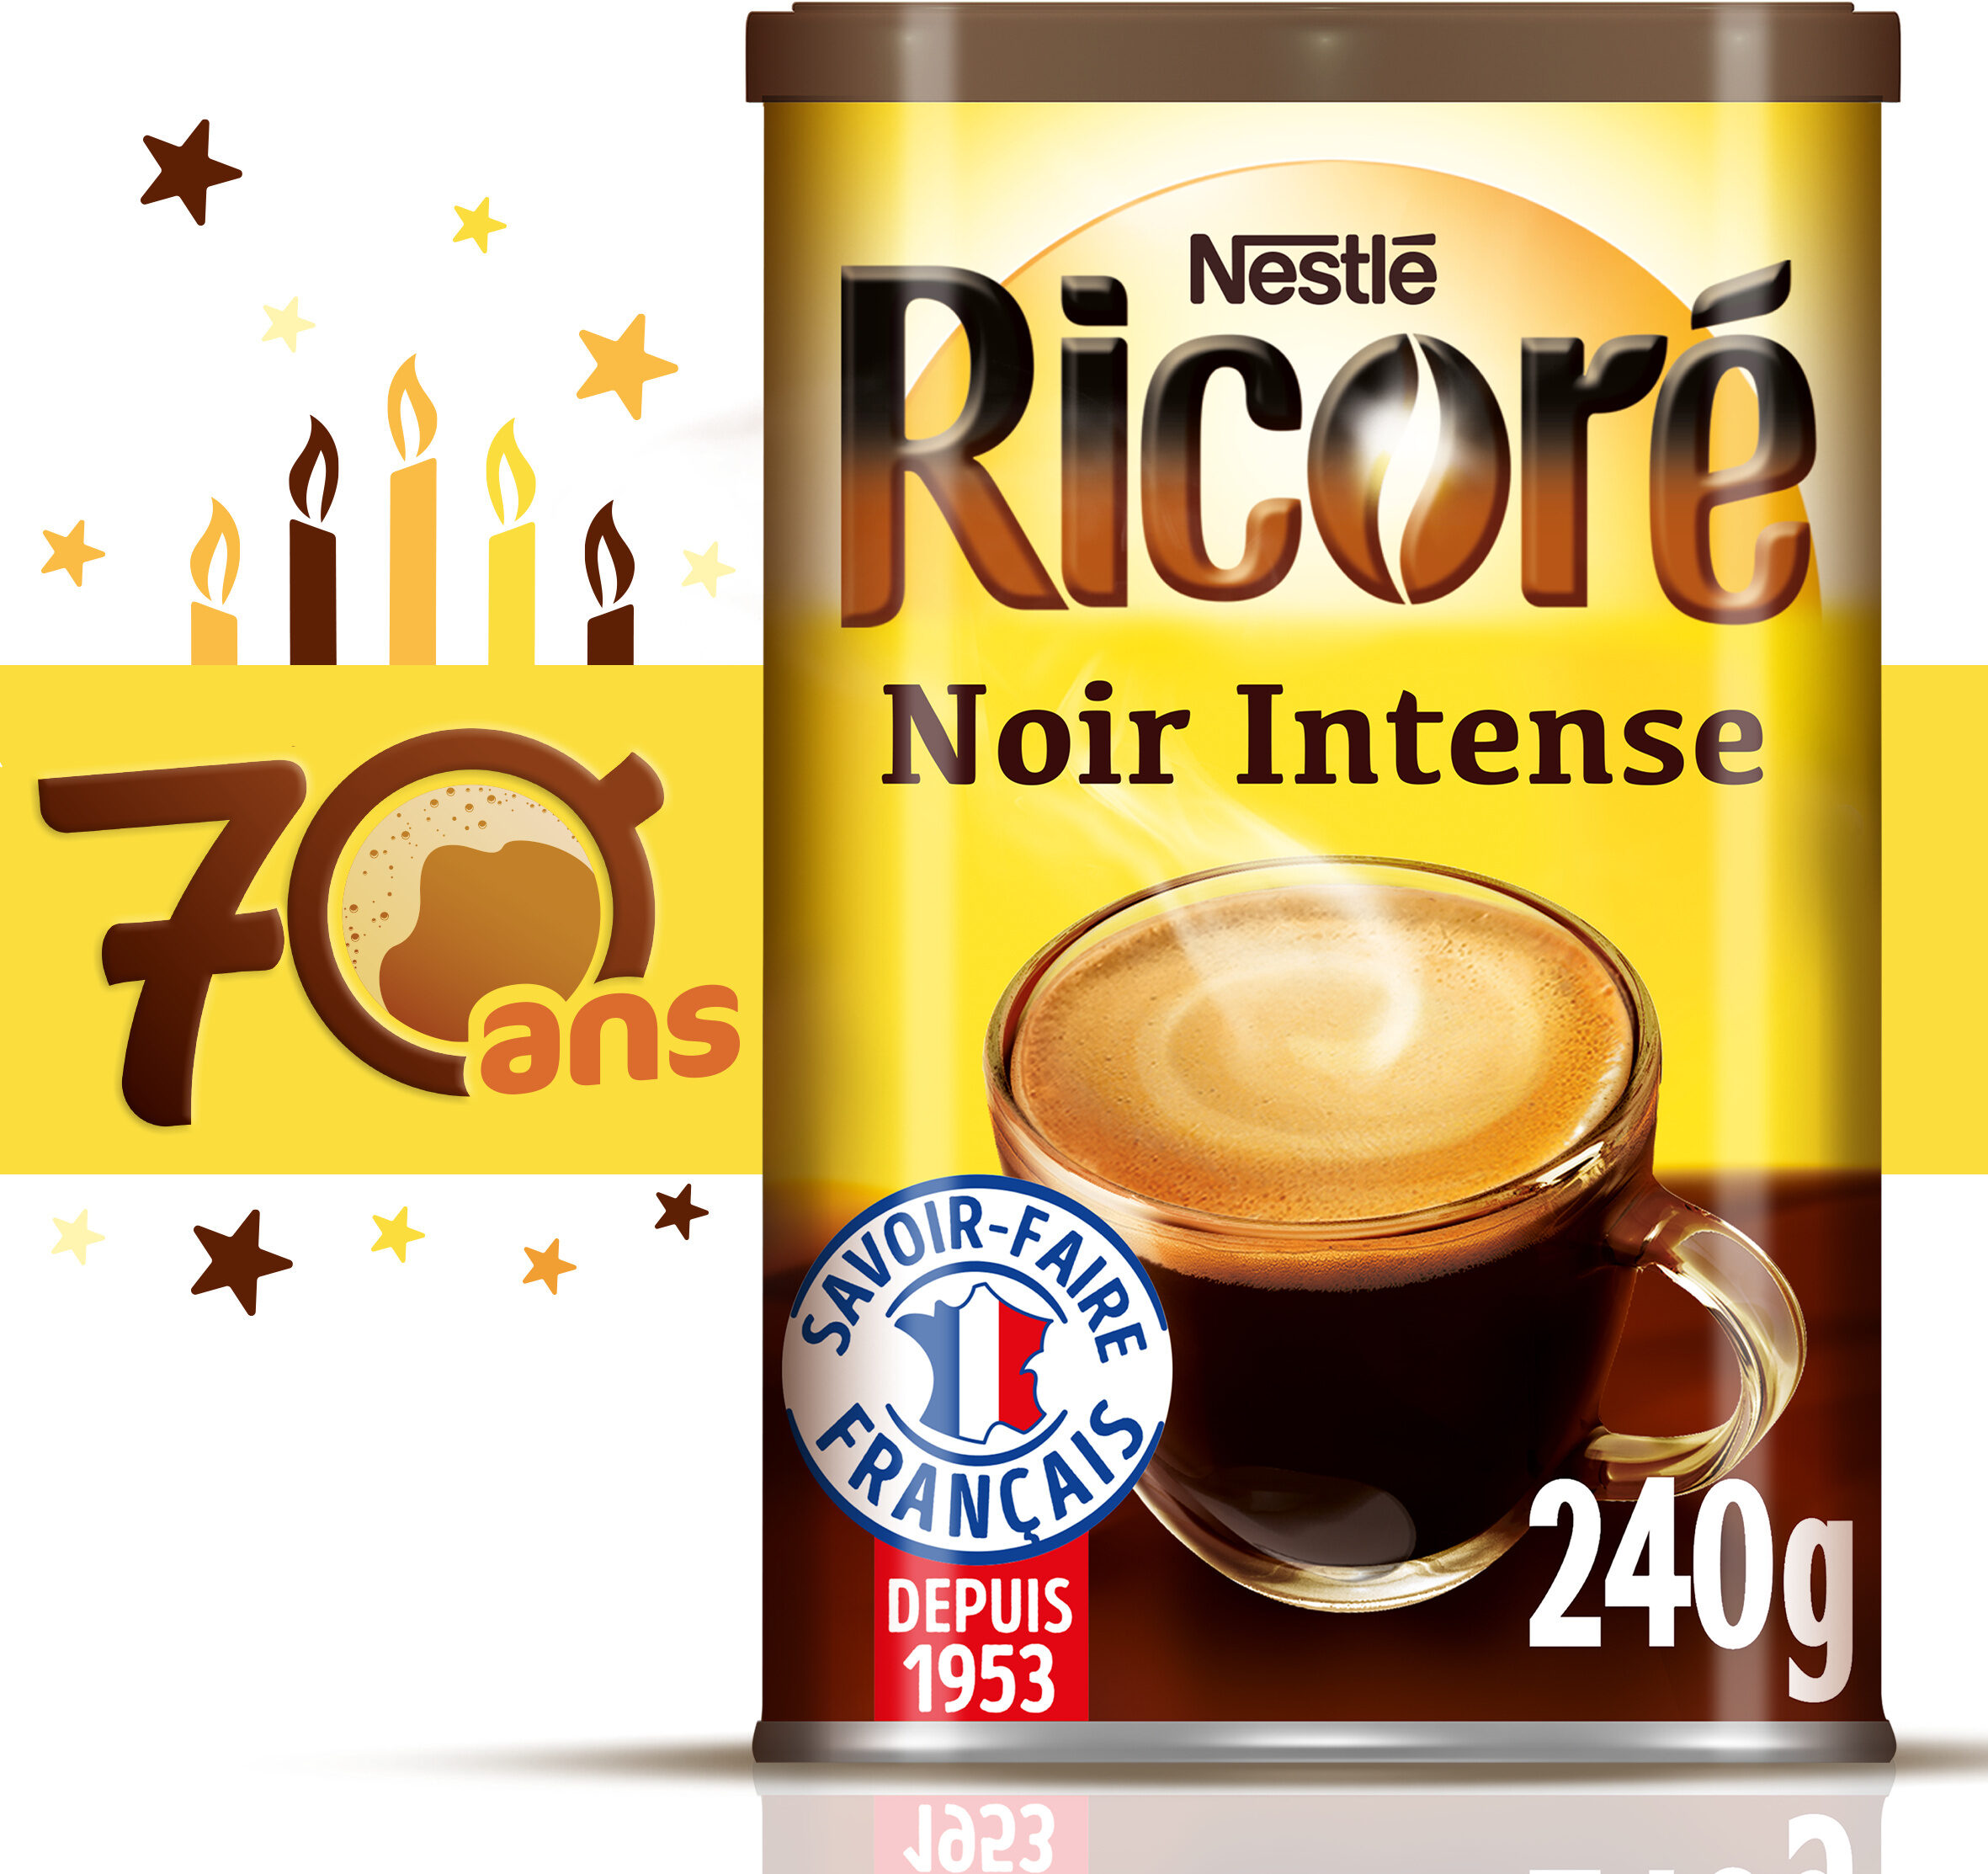 RICORE Noir Intense, Café & Chicorée, Boîte 240g - Product - fr